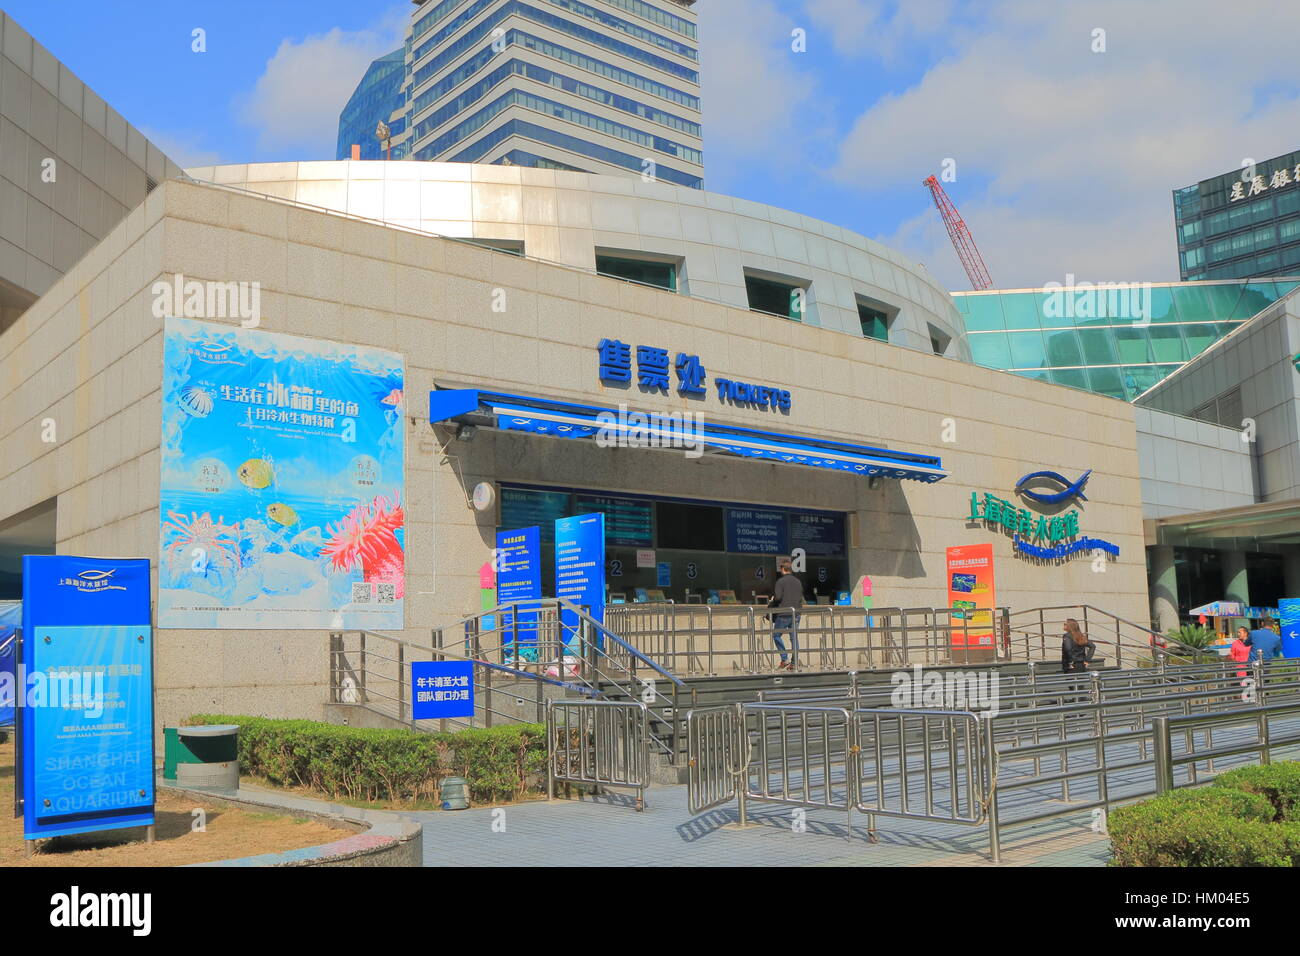 Personnes visitent Shanghai Ocean Aquarium de Shanghai en Chine. Shanghai Ocean Aquarium a l'un des plus longs tunnels sous-marins dans le monde. Banque D'Images